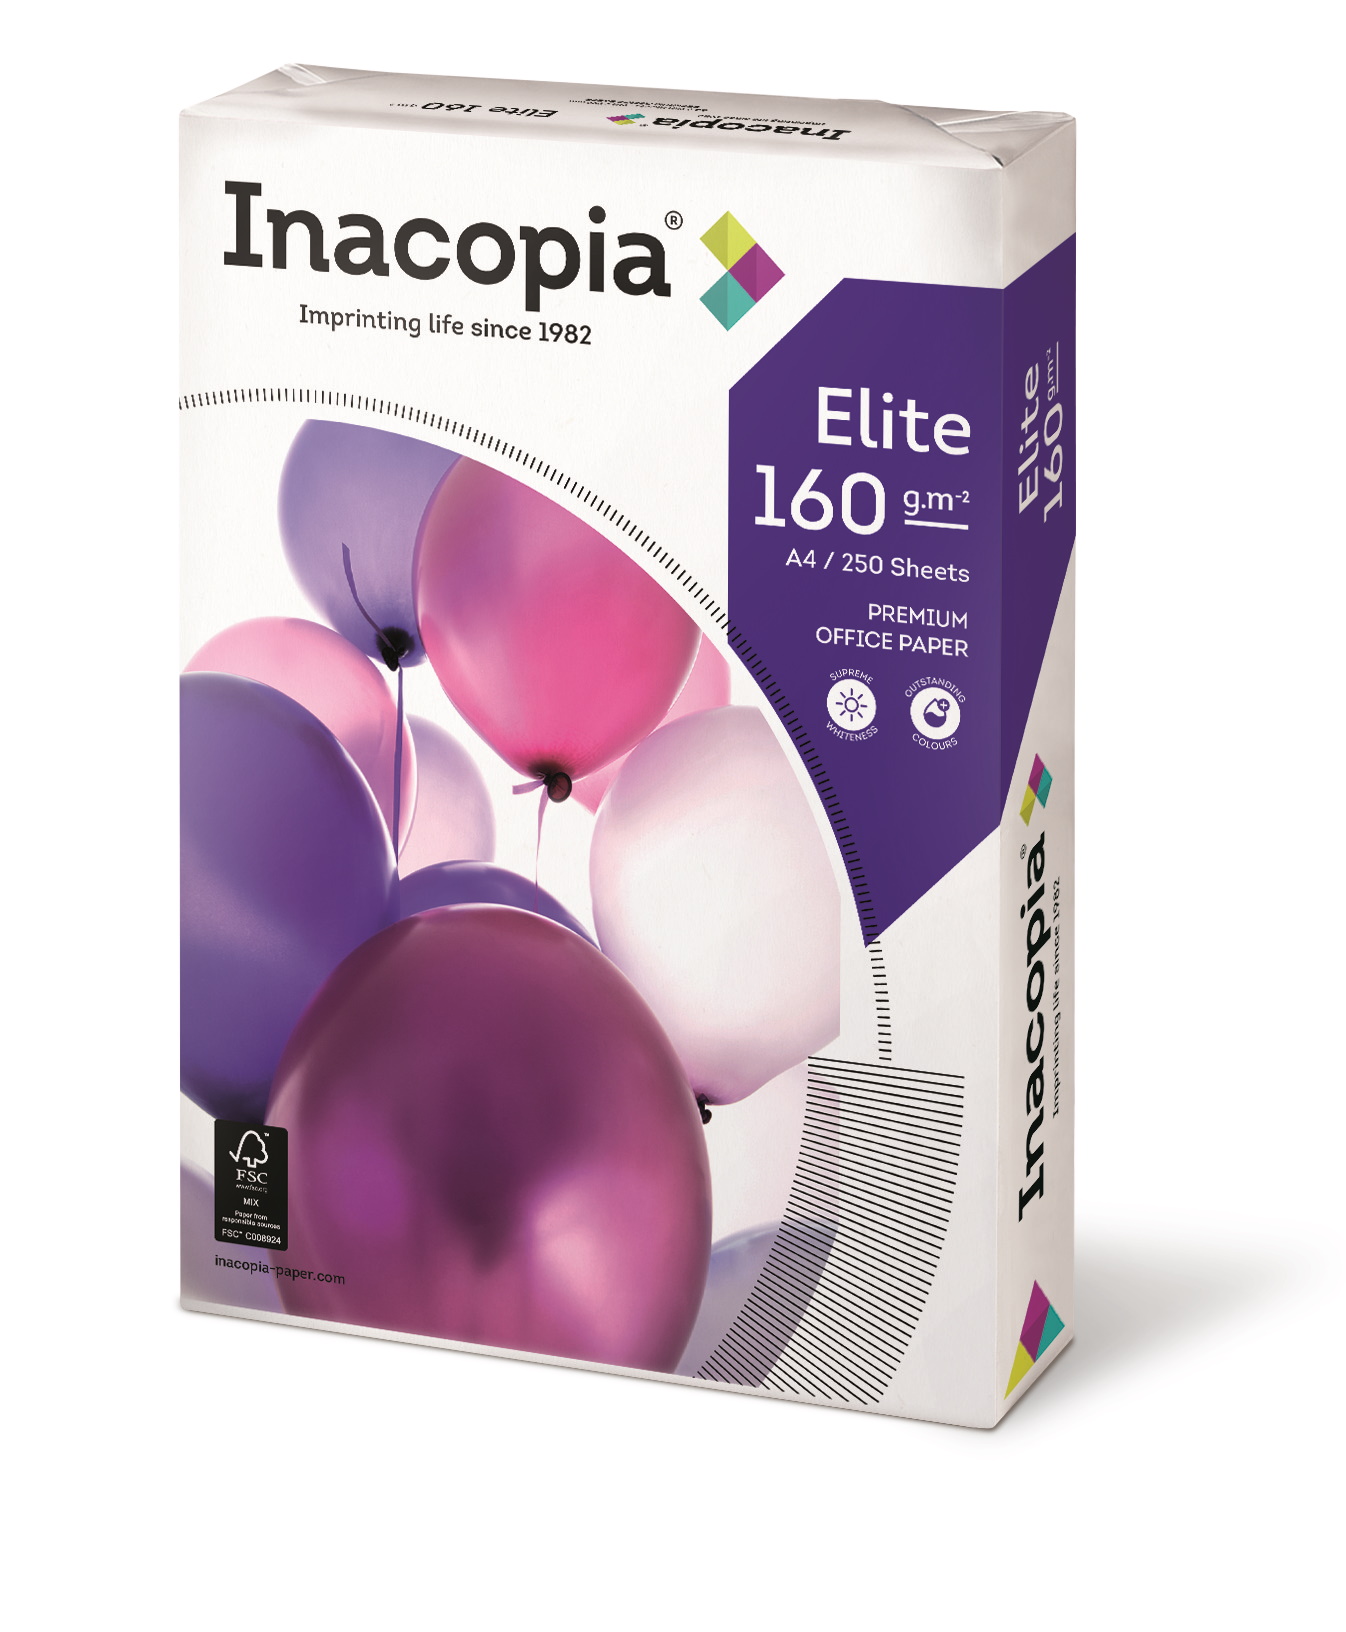 Inacopia Elite A4 multifunctioneel papier 160g 500 vellen